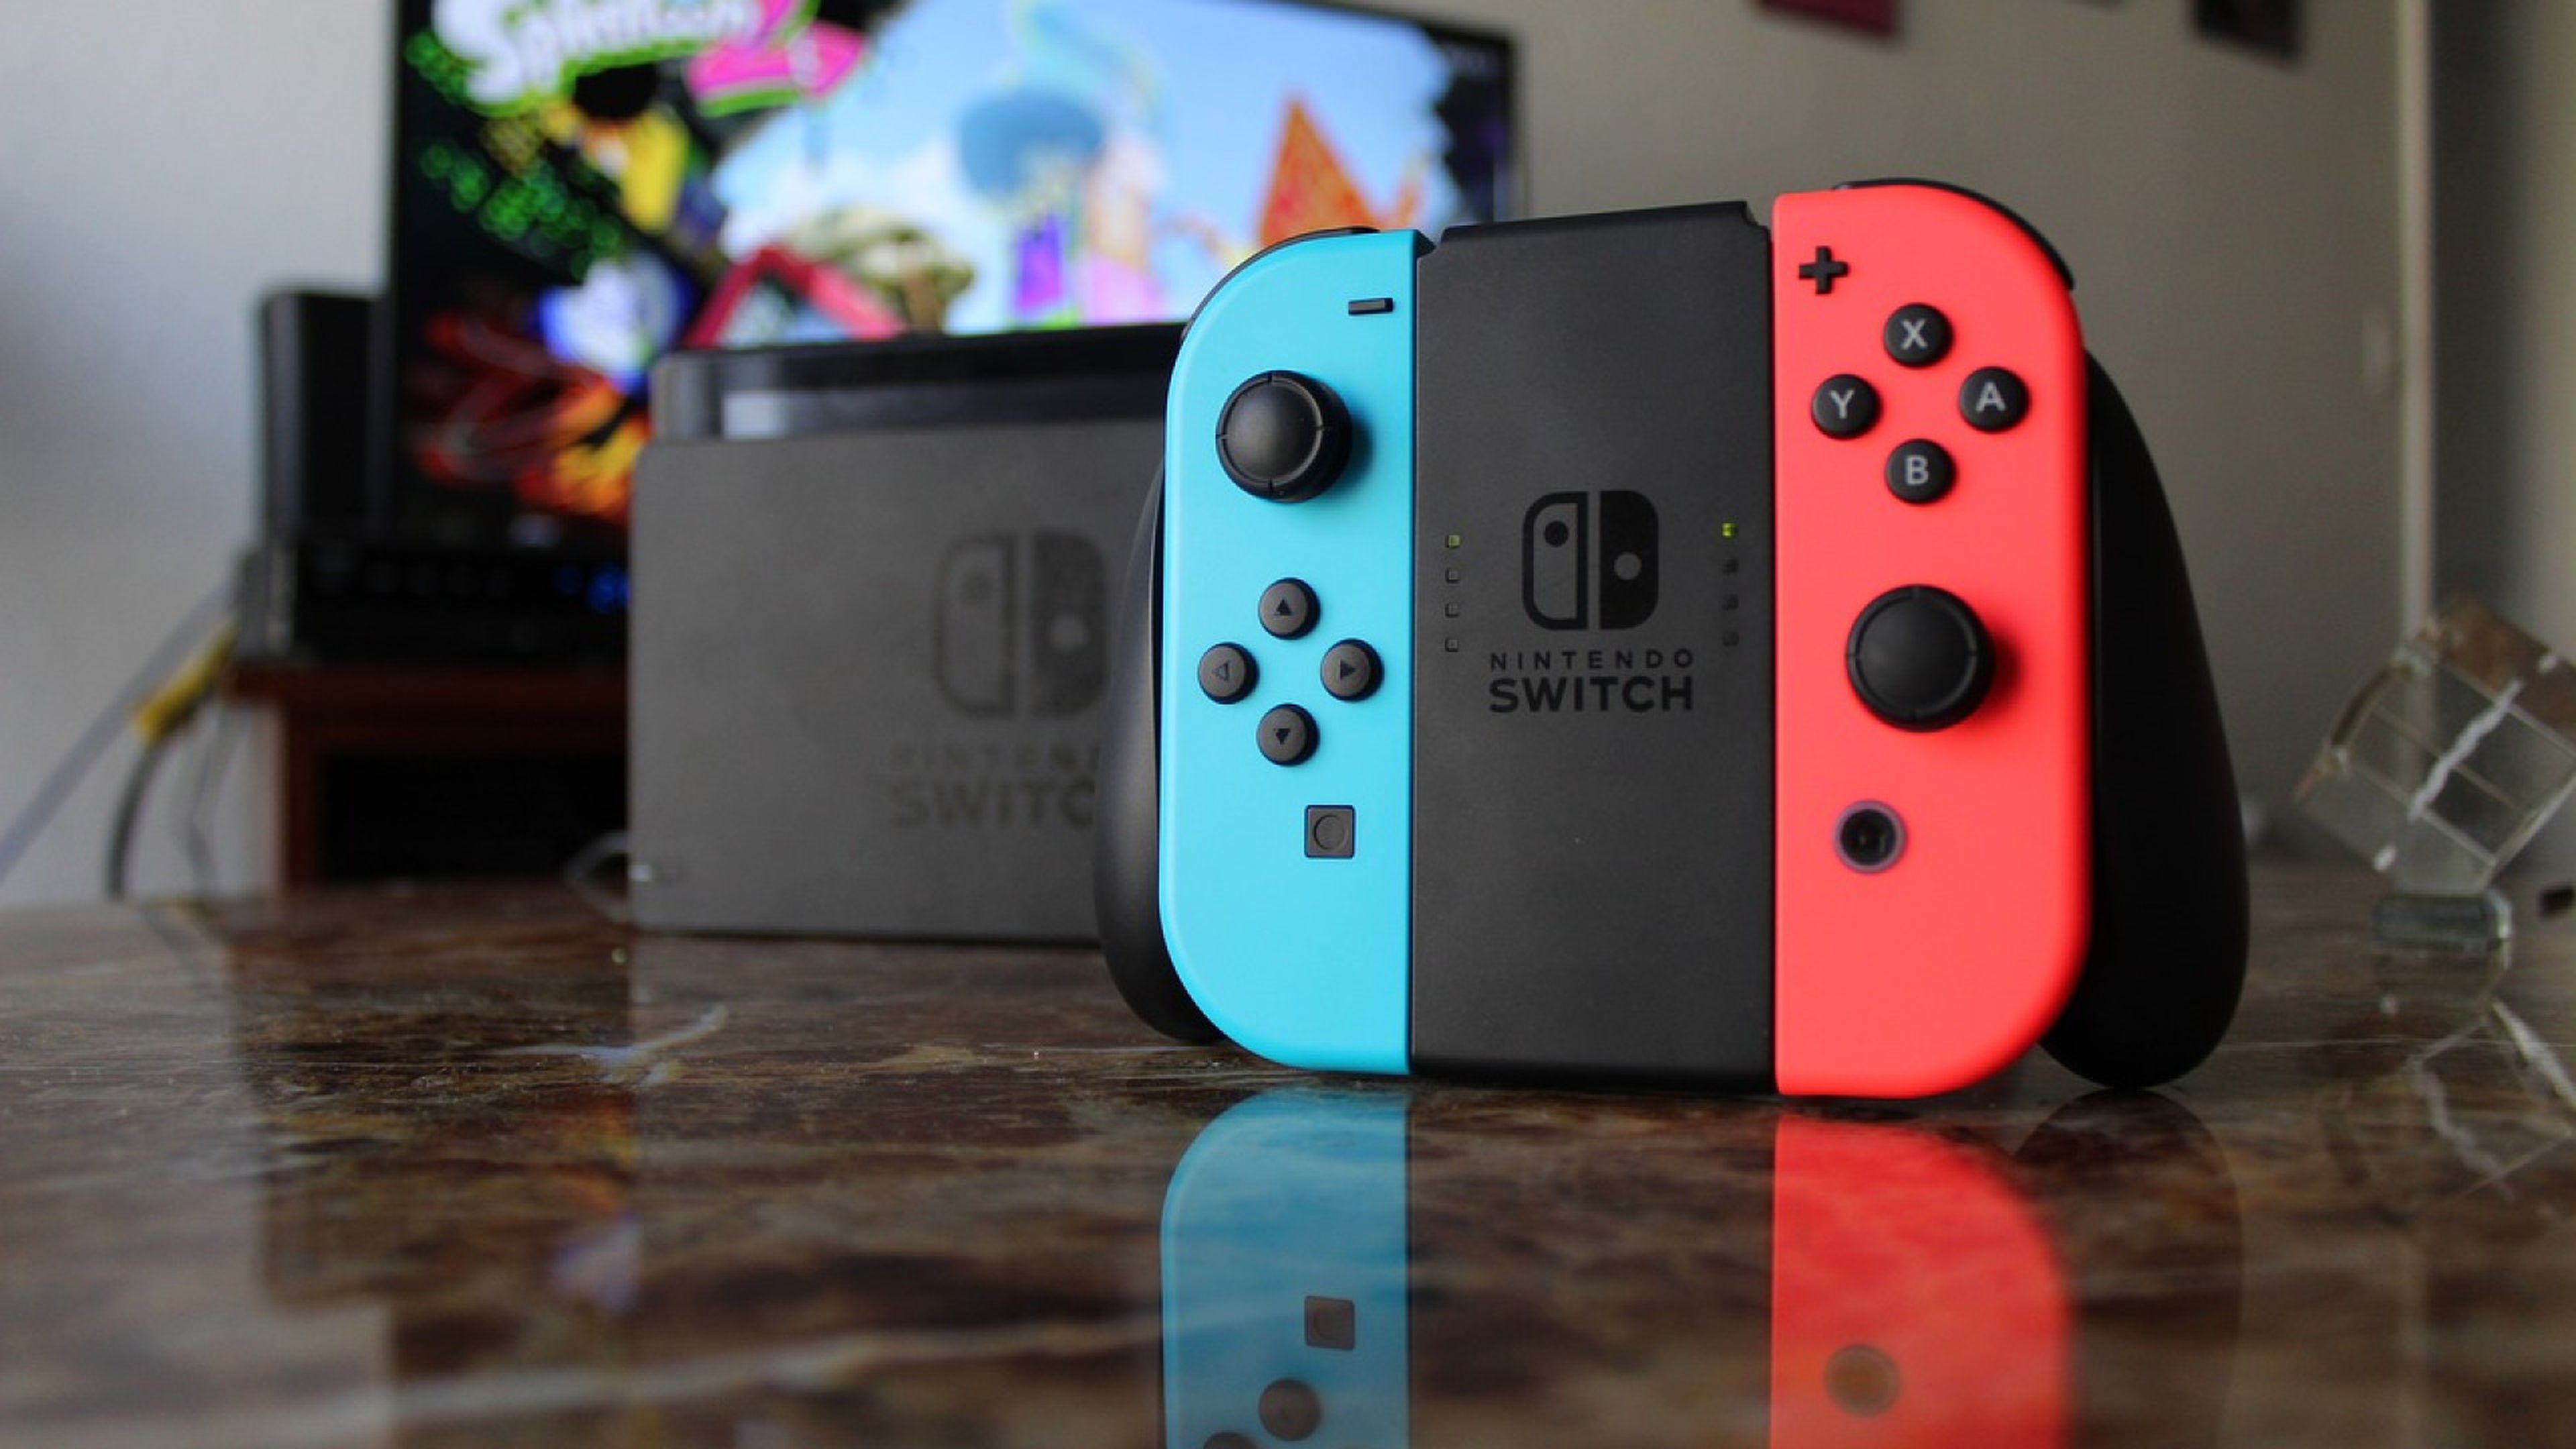 claridad punto sed Hazte con una Nintendo Switch Neon 2019 por 314 euros y con envío gratis  desde España | Hobby Consolas